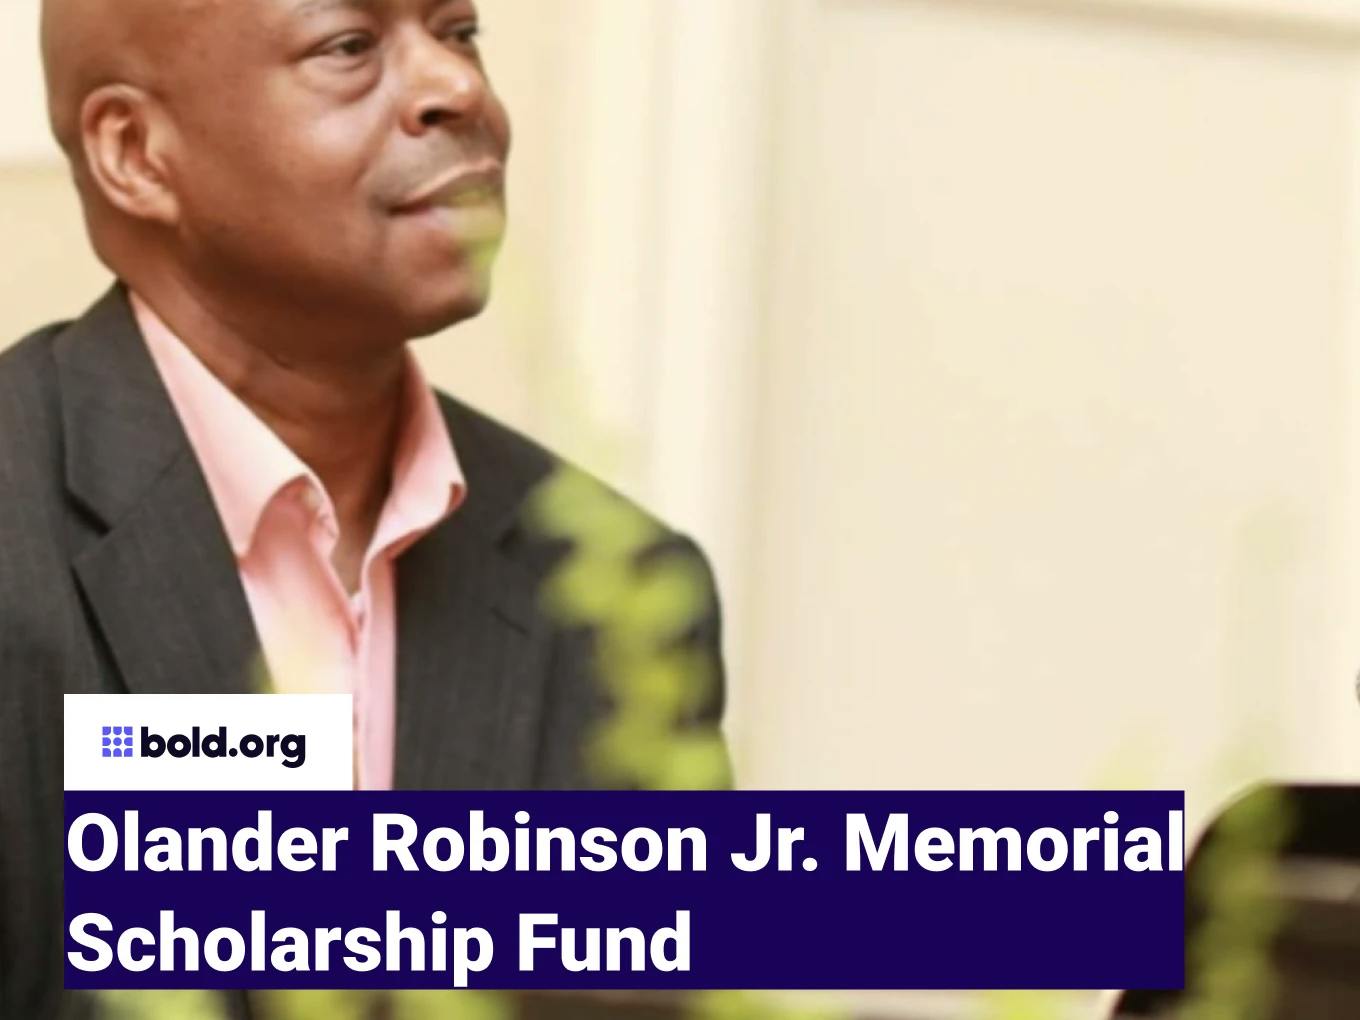 Olander Robinson Jr. Memorial Scholarship Fund